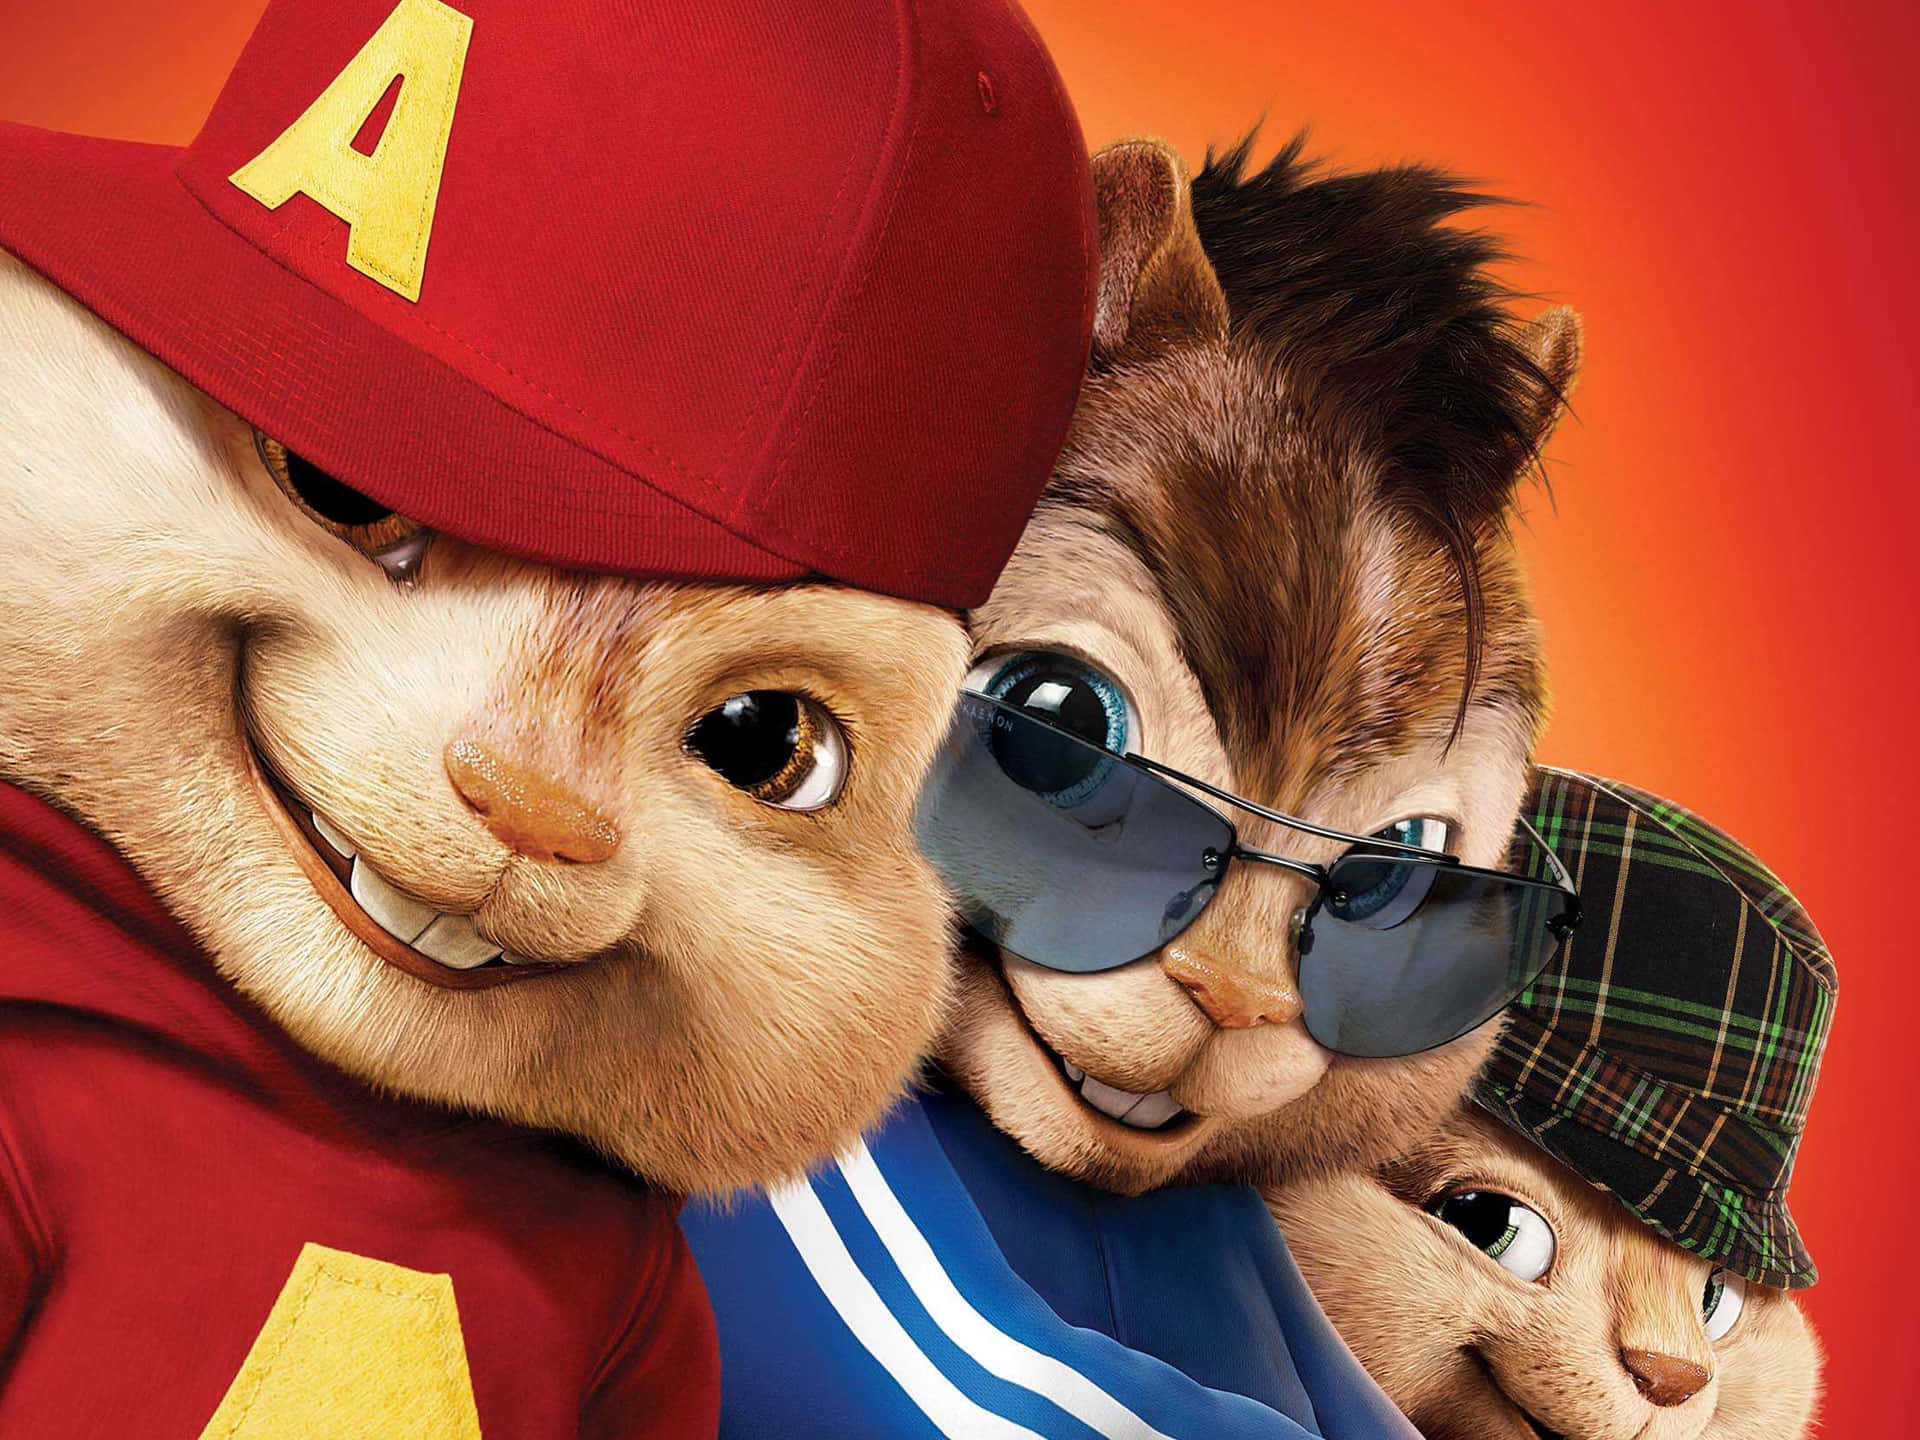 Seguile Divertenti Avventure Di Alvin & The Chipmunks